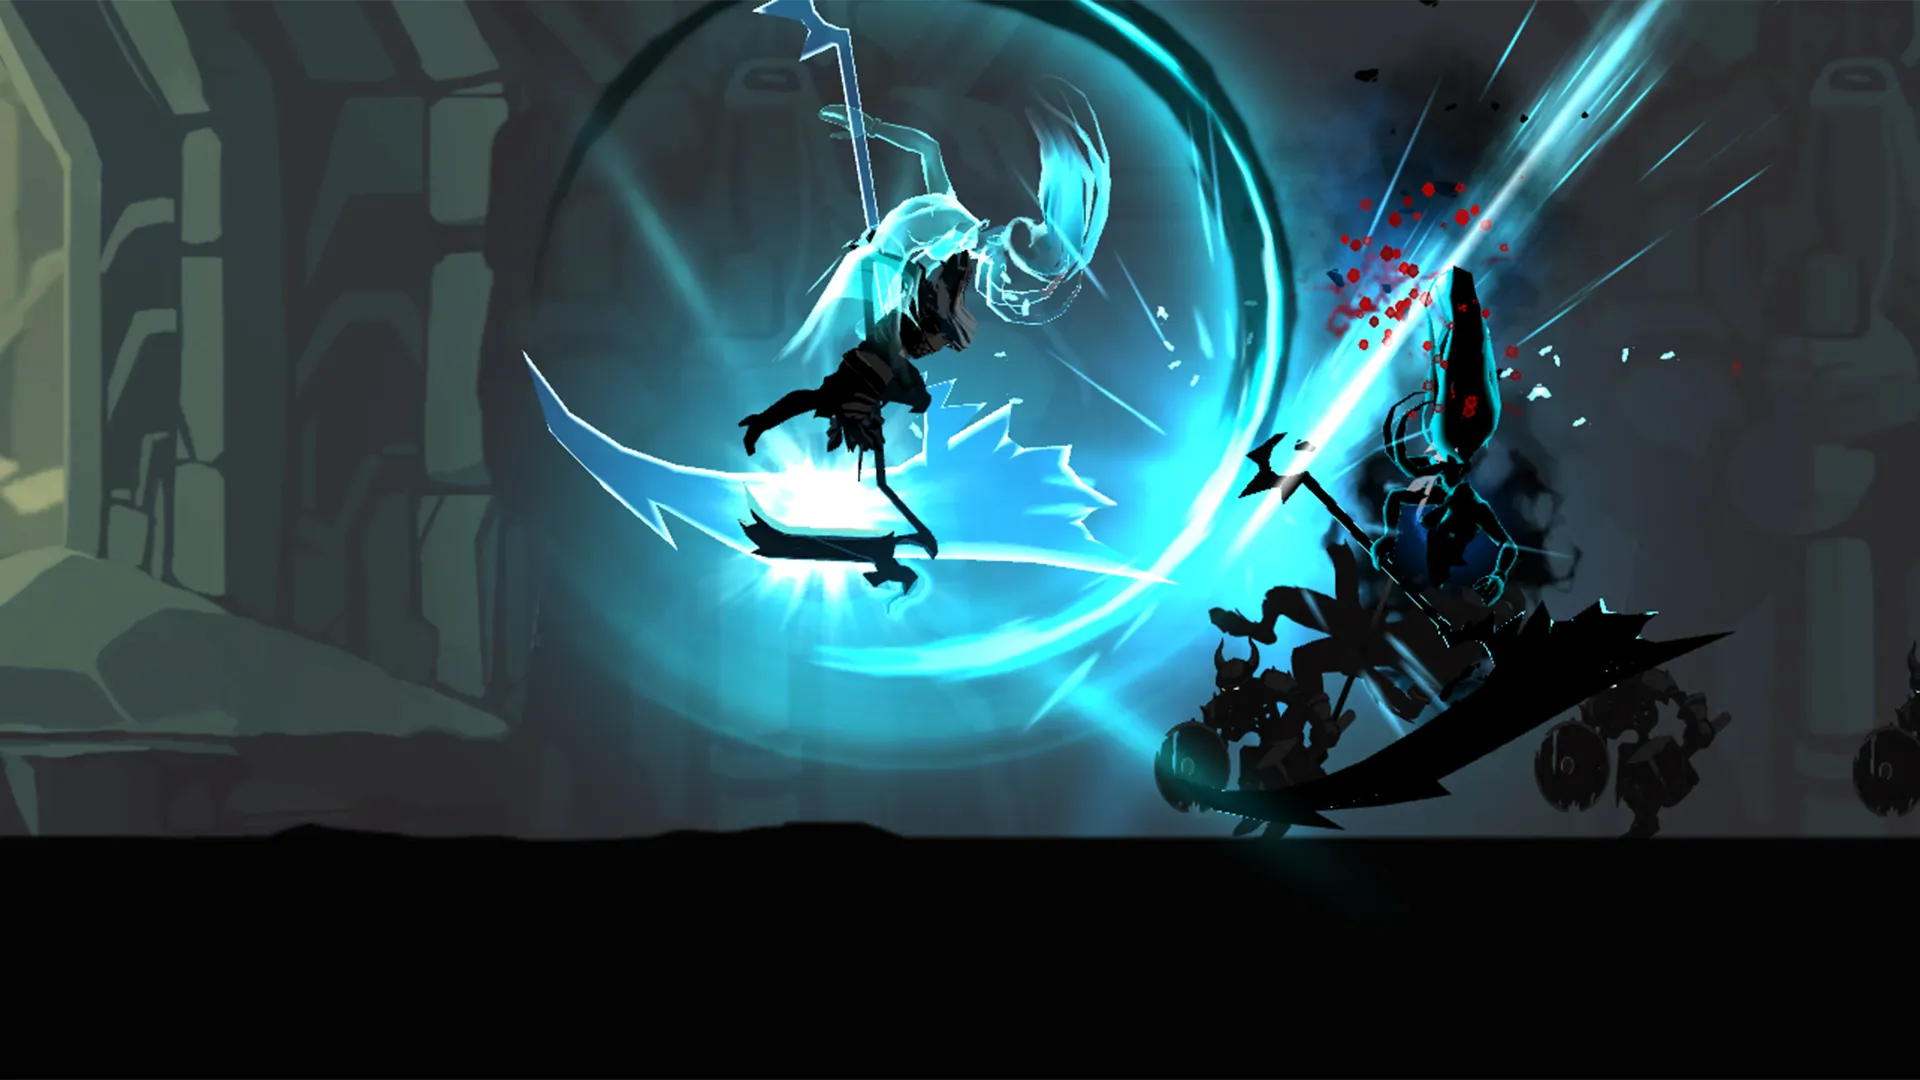 نینجایی در حال مبارزه با موجودی دیگر در بازی Shadow of death